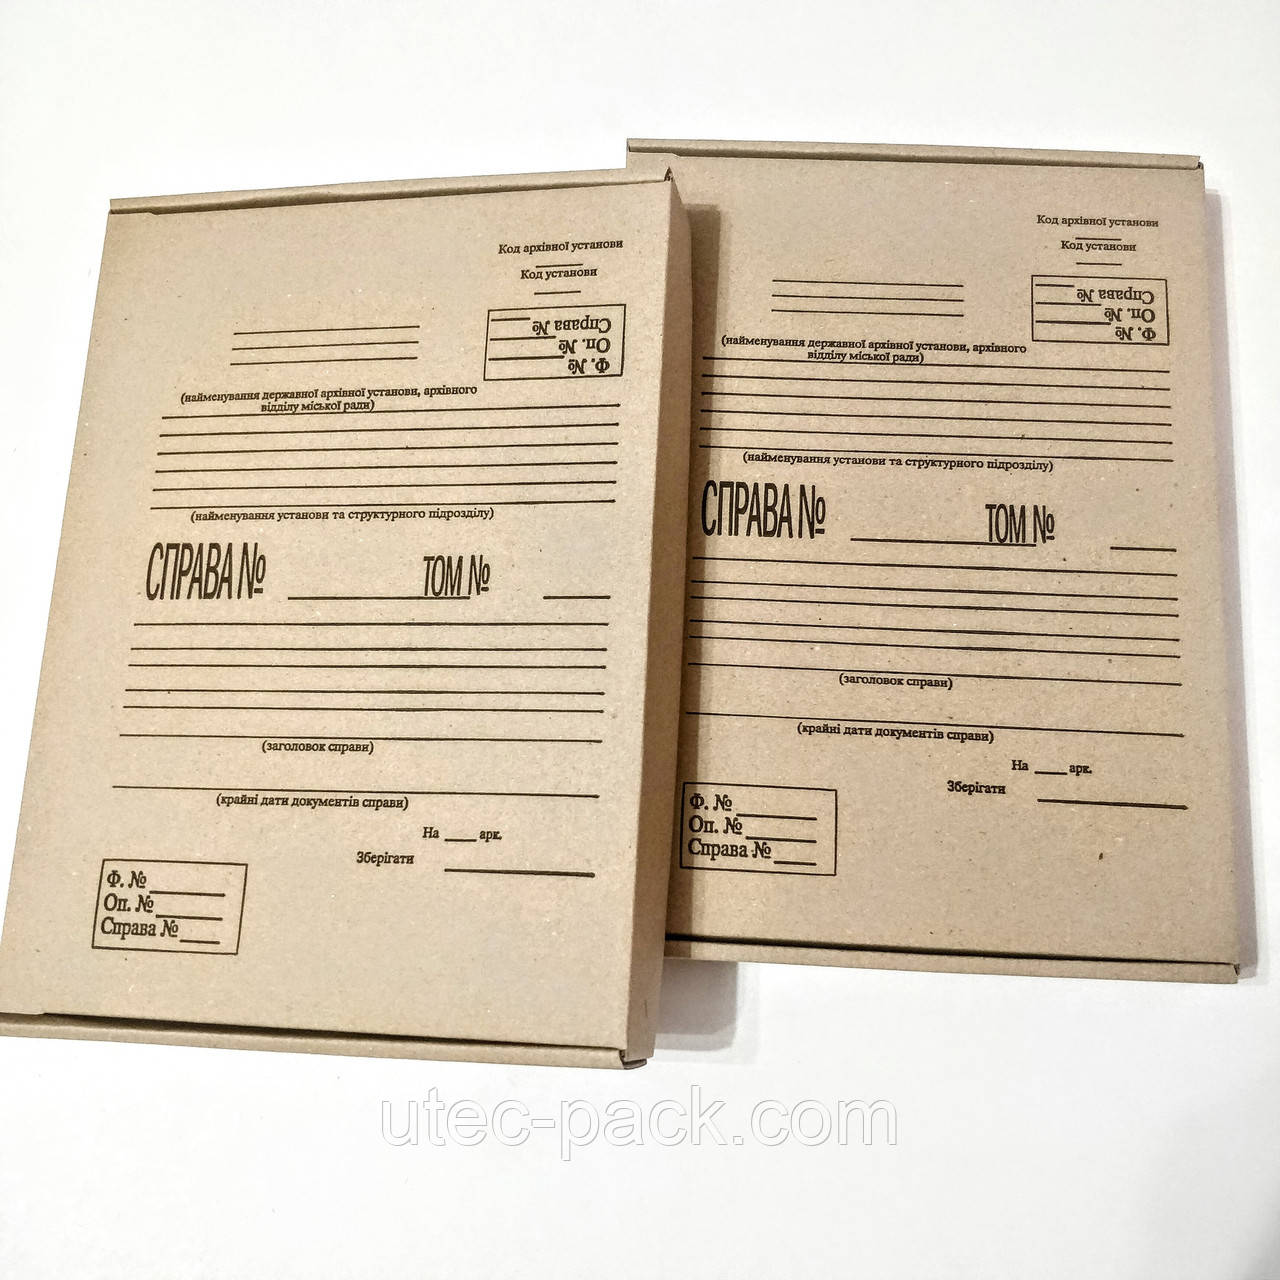 Папка архівна бокс із щільного гофрокартону з титульною сторінкою, формату А4 (323*228мм), корінець 40 мм